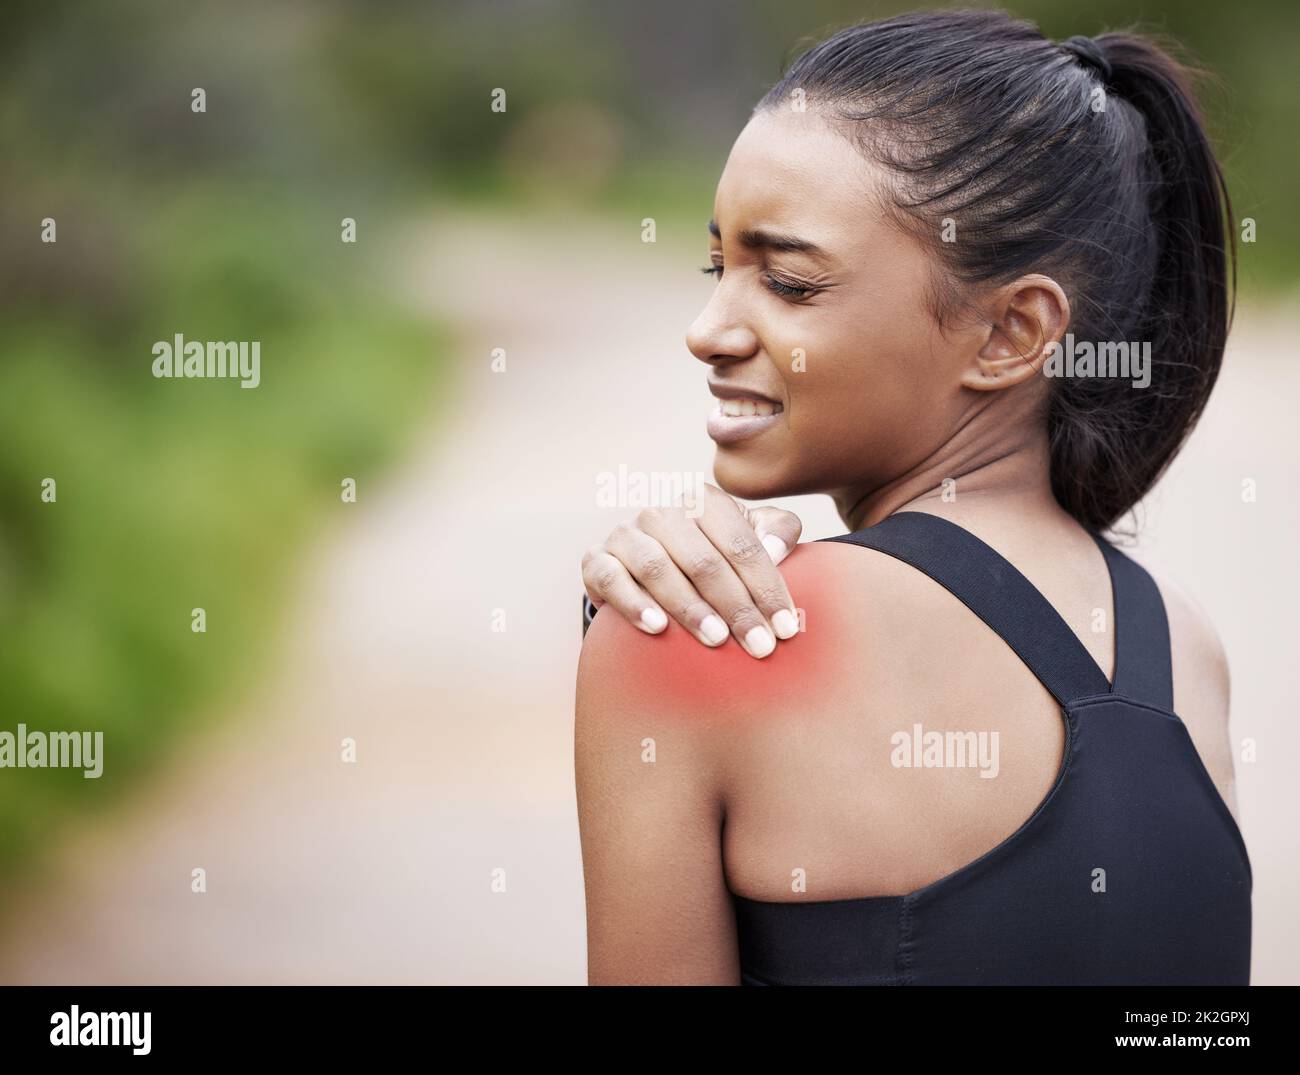 Dieser Muskel fühlt sich so eng an. Aufnahme einer sportlichen jungen Frau mit Schulterschmerzen beim Training im Freien. Stockfoto